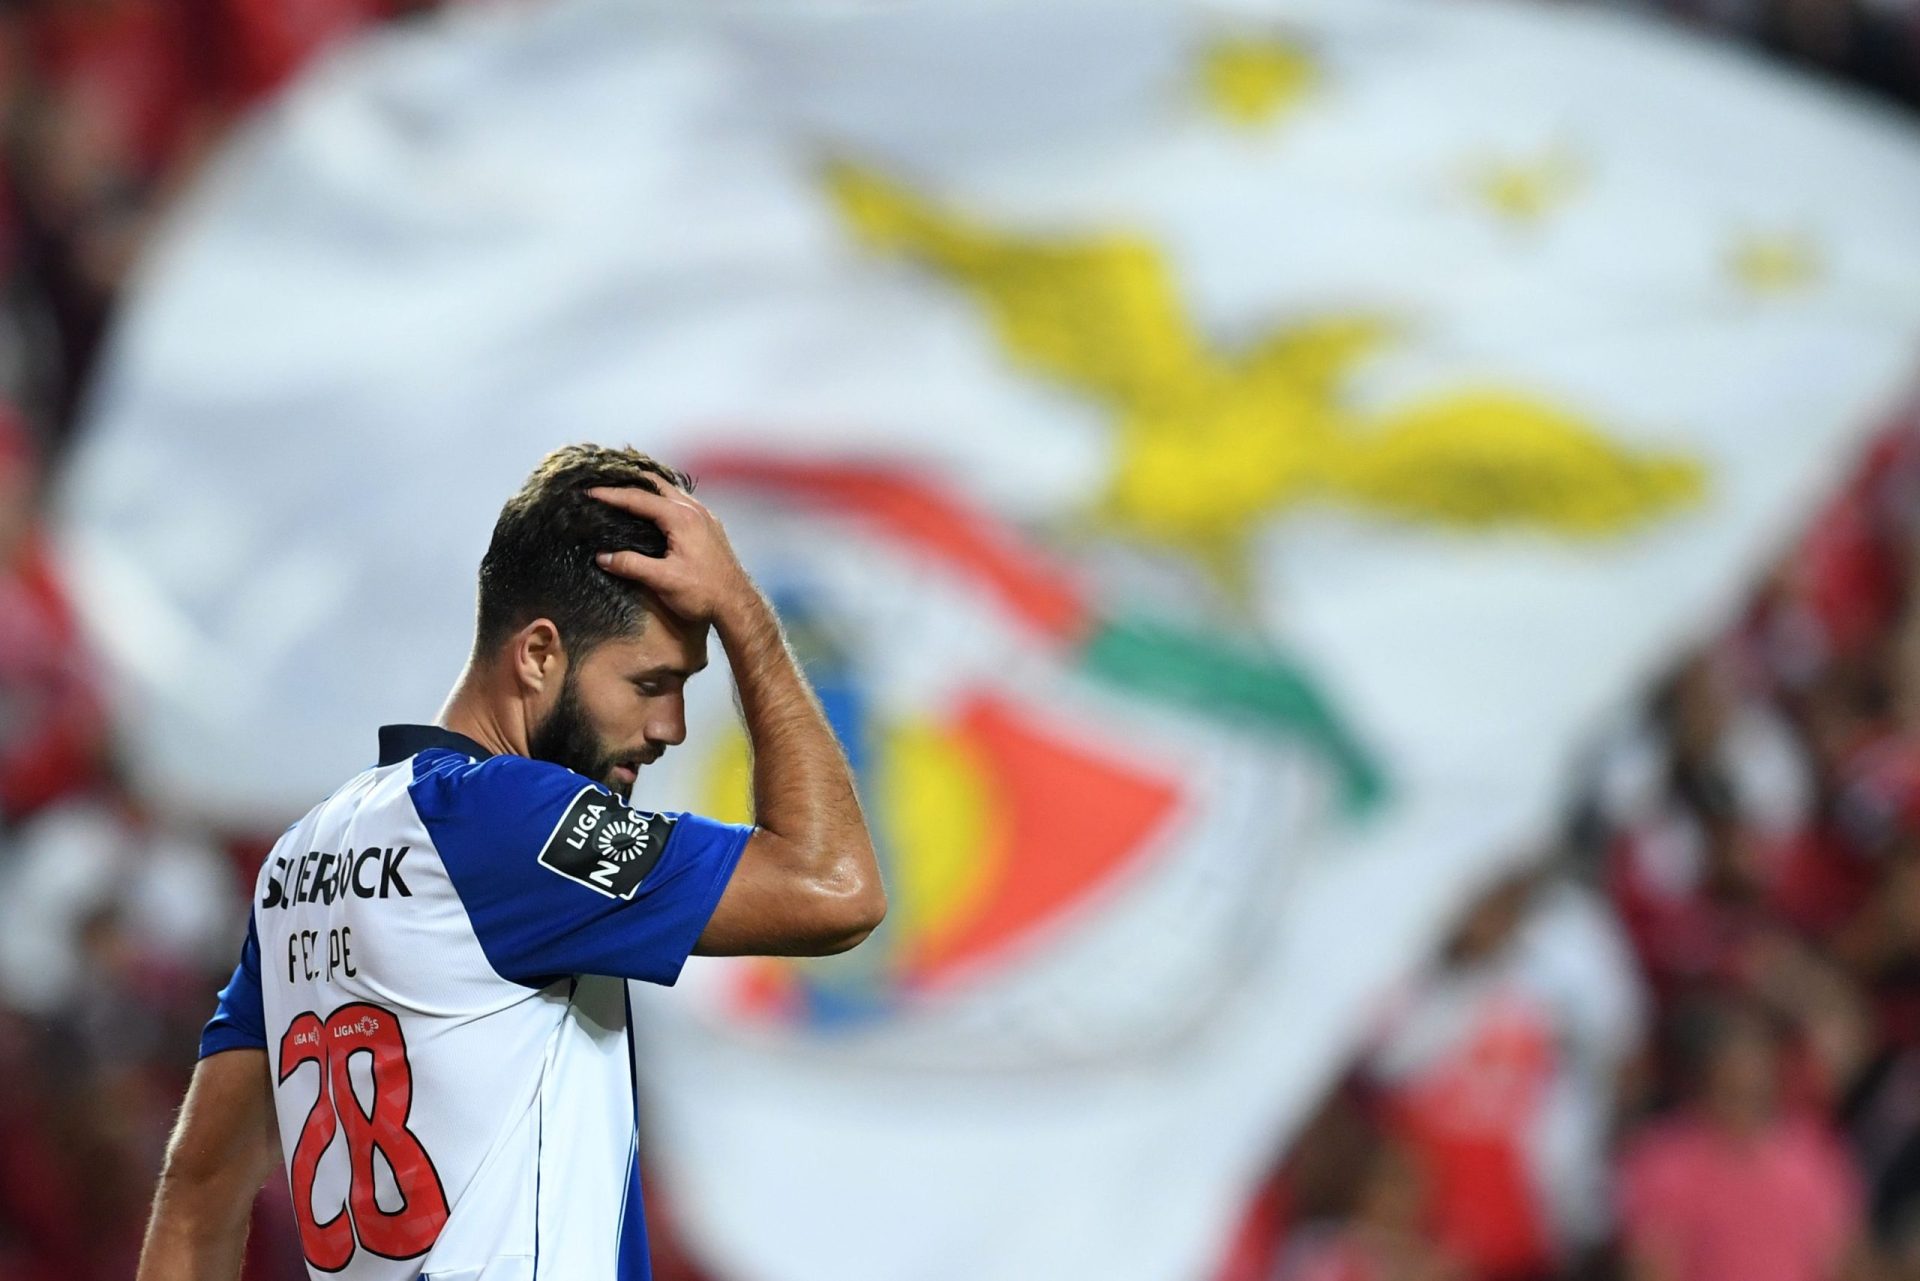 Música de tourada no Benfica-Porto causa polémica